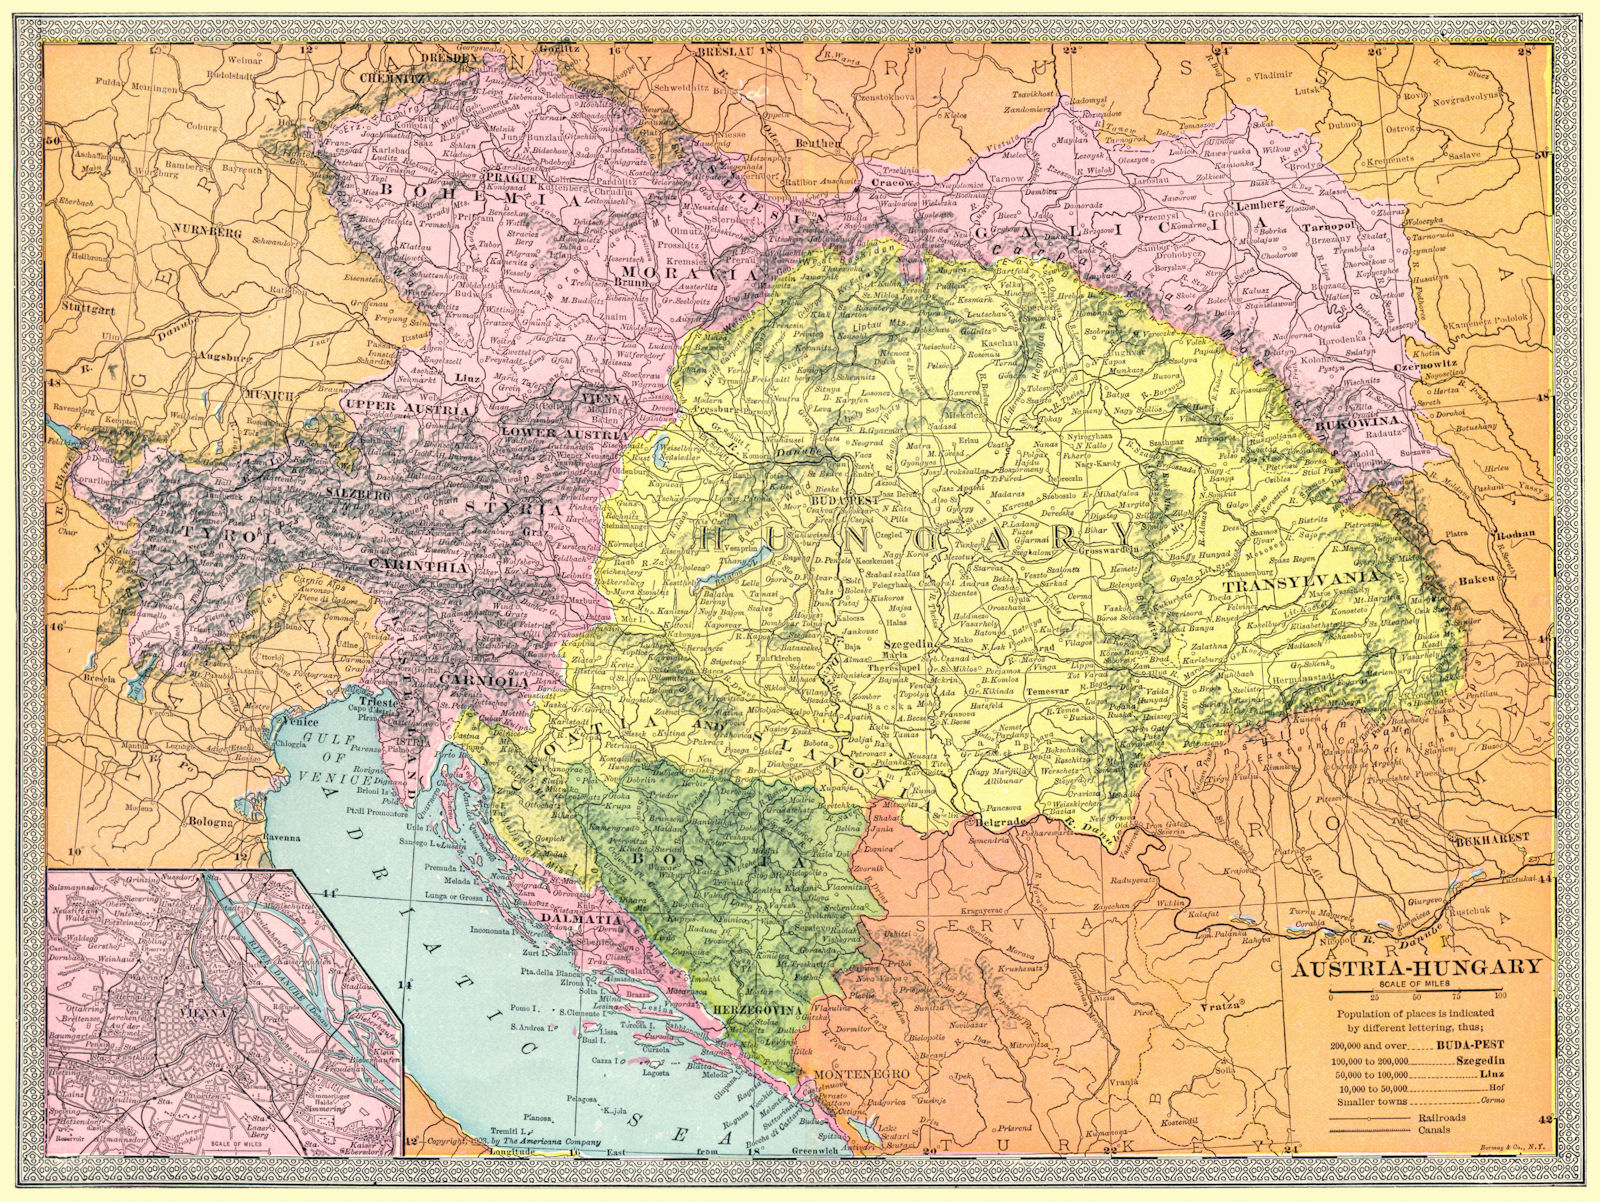 AUSTRIA-HUNGARY. Bosnia Dalmatia Galicia Bohemia Tyrol &c 1907 old antique map